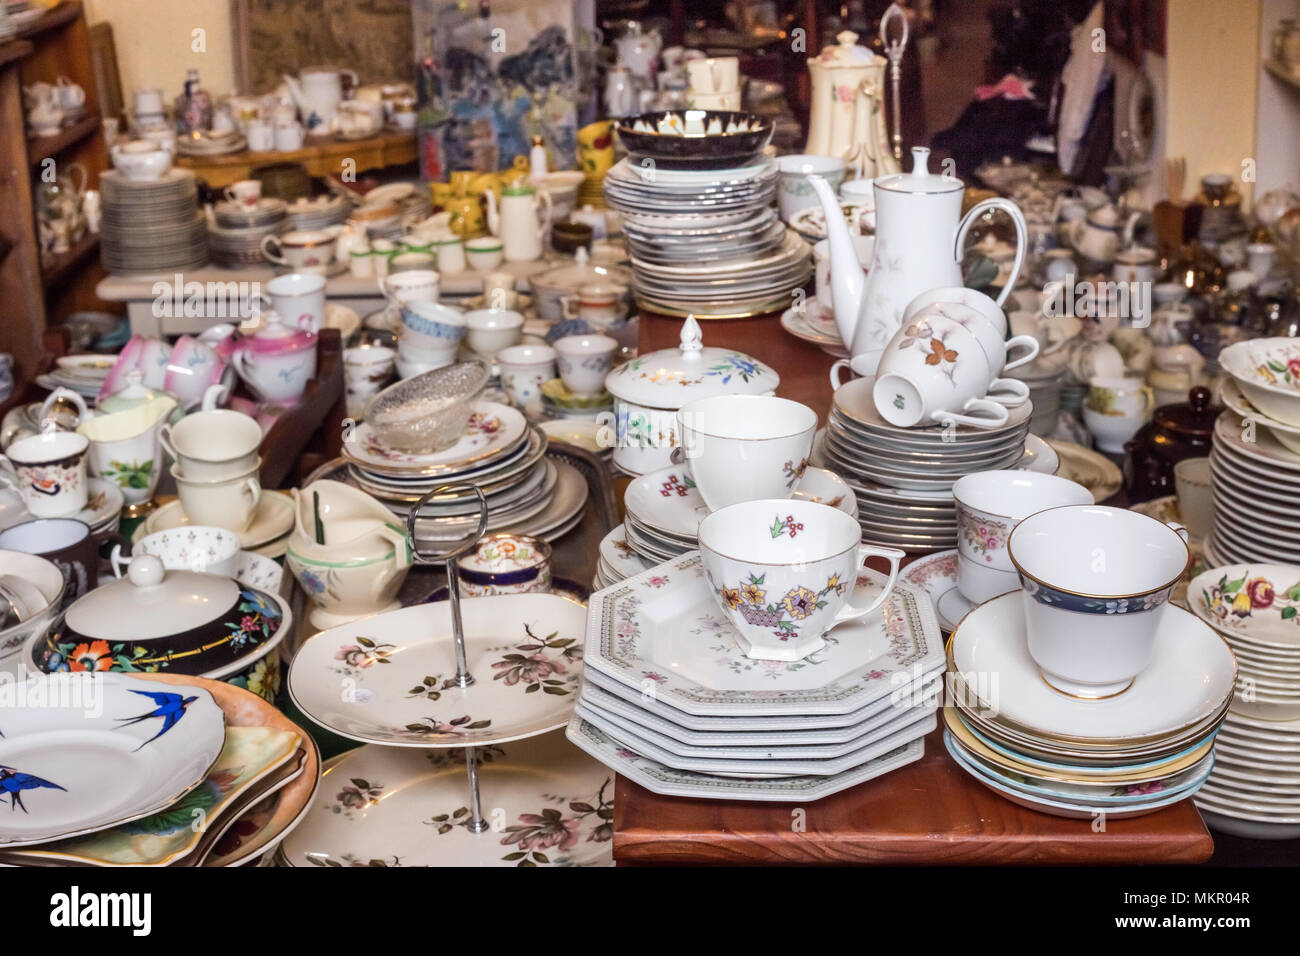 Johannesburg, Südafrika, April 29-2018: Porzellan Tee Tassen und  Untertassen auf eine Tabelle in einem second hand Shop gestapelt  Stockfotografie - Alamy